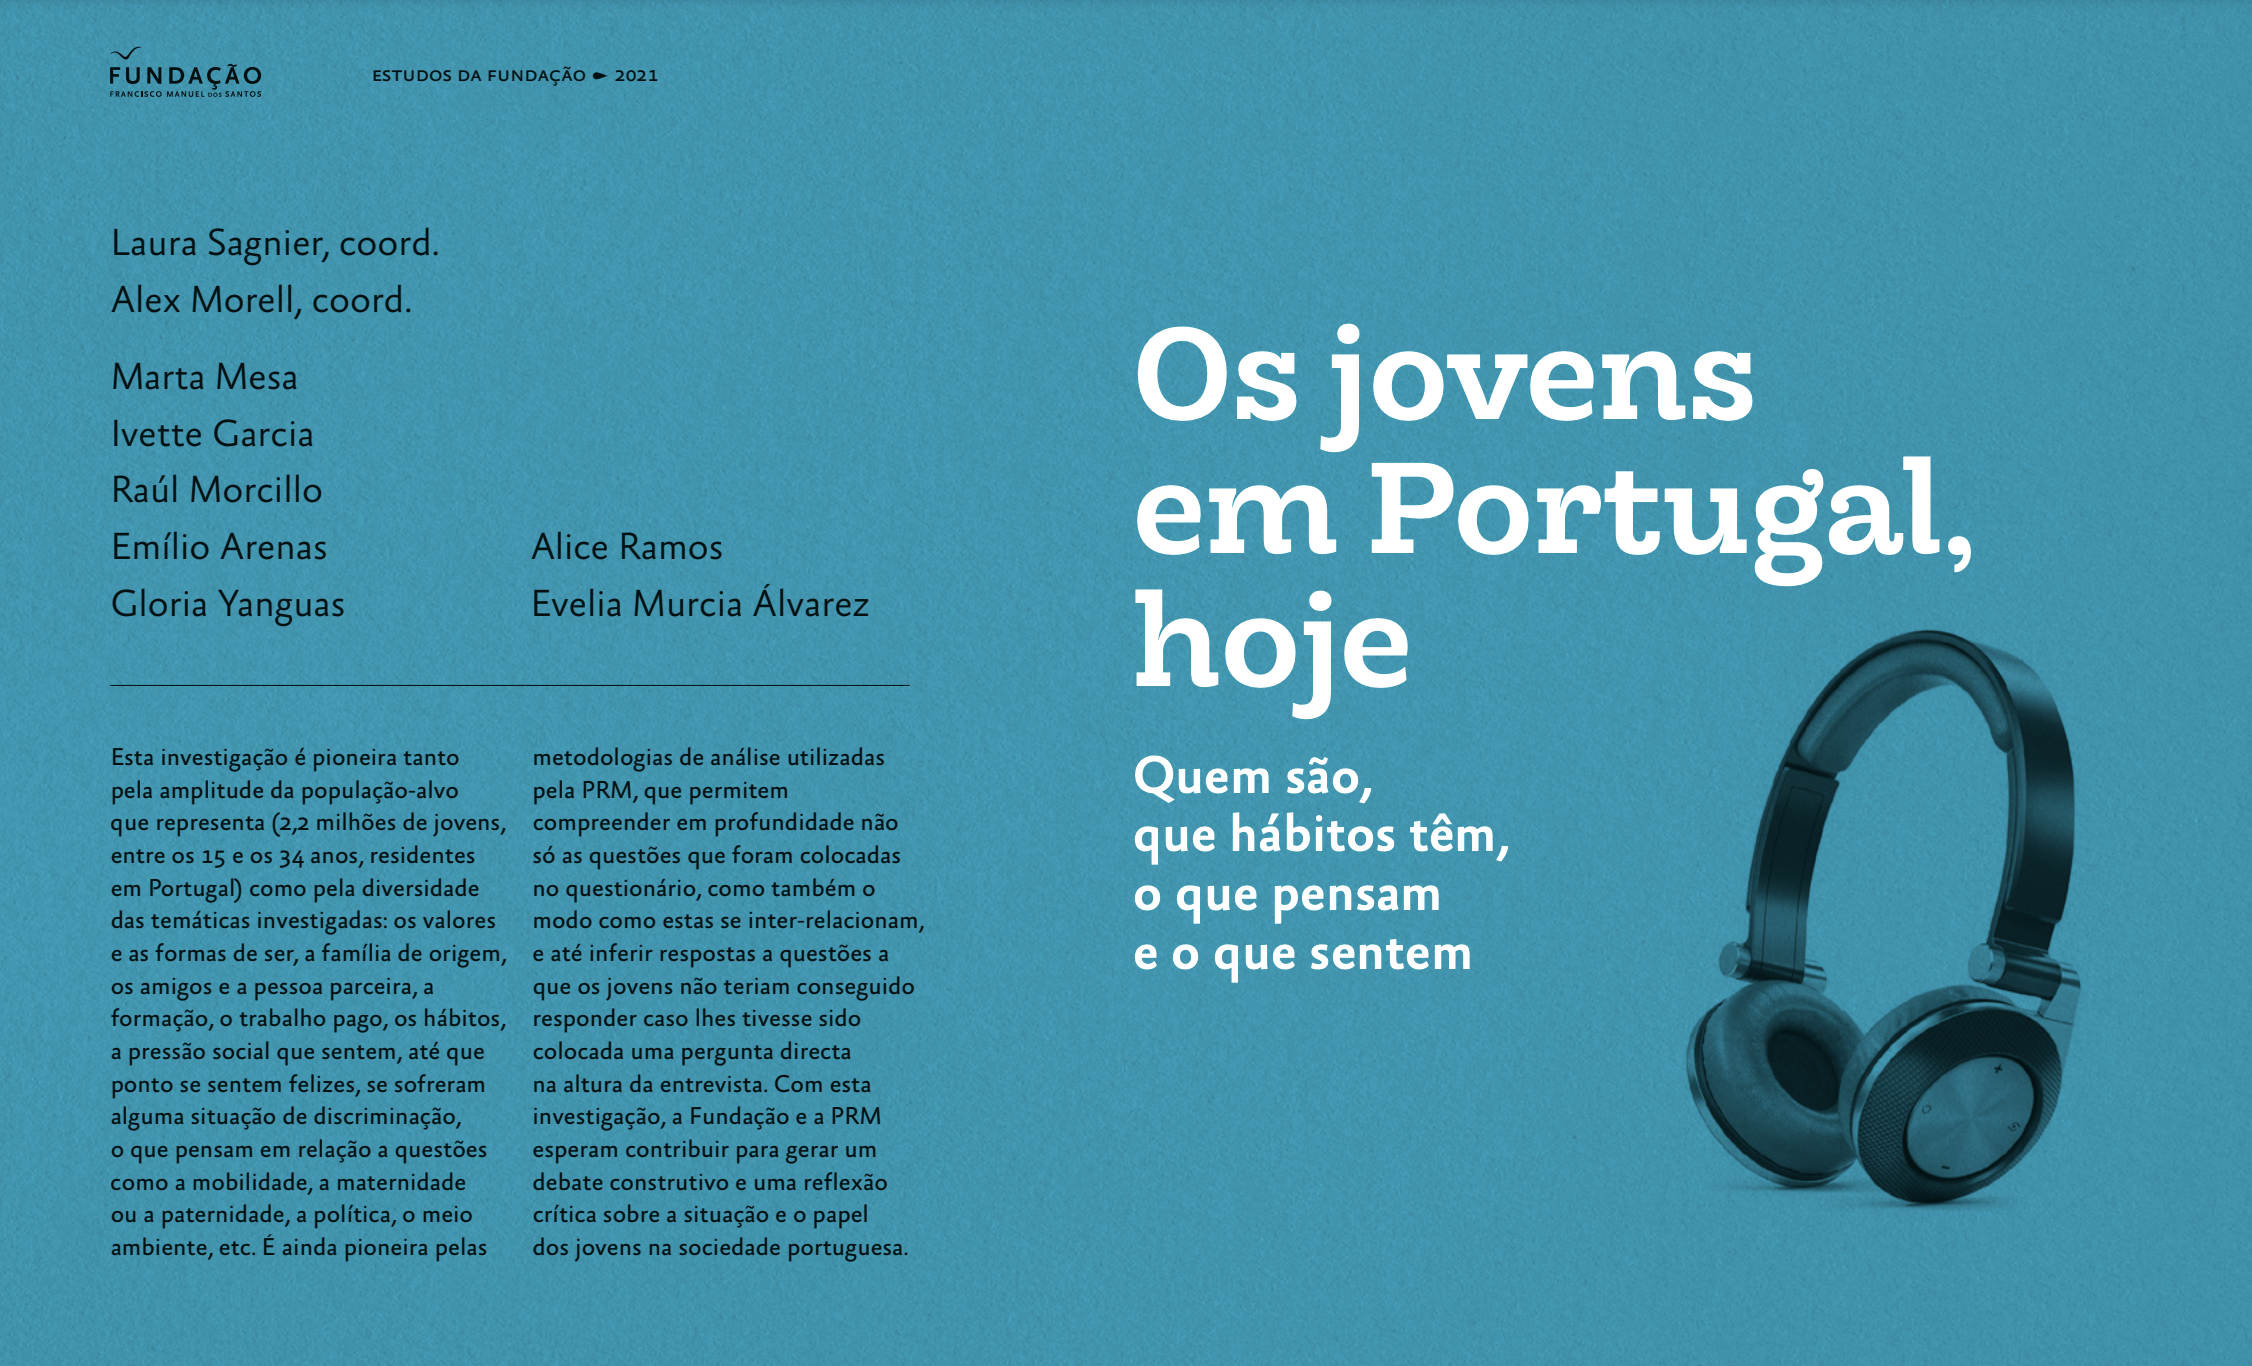 Os jovens em Portugal, hoje: Quem são, que hábitos têm, o que pensam e o que sentem